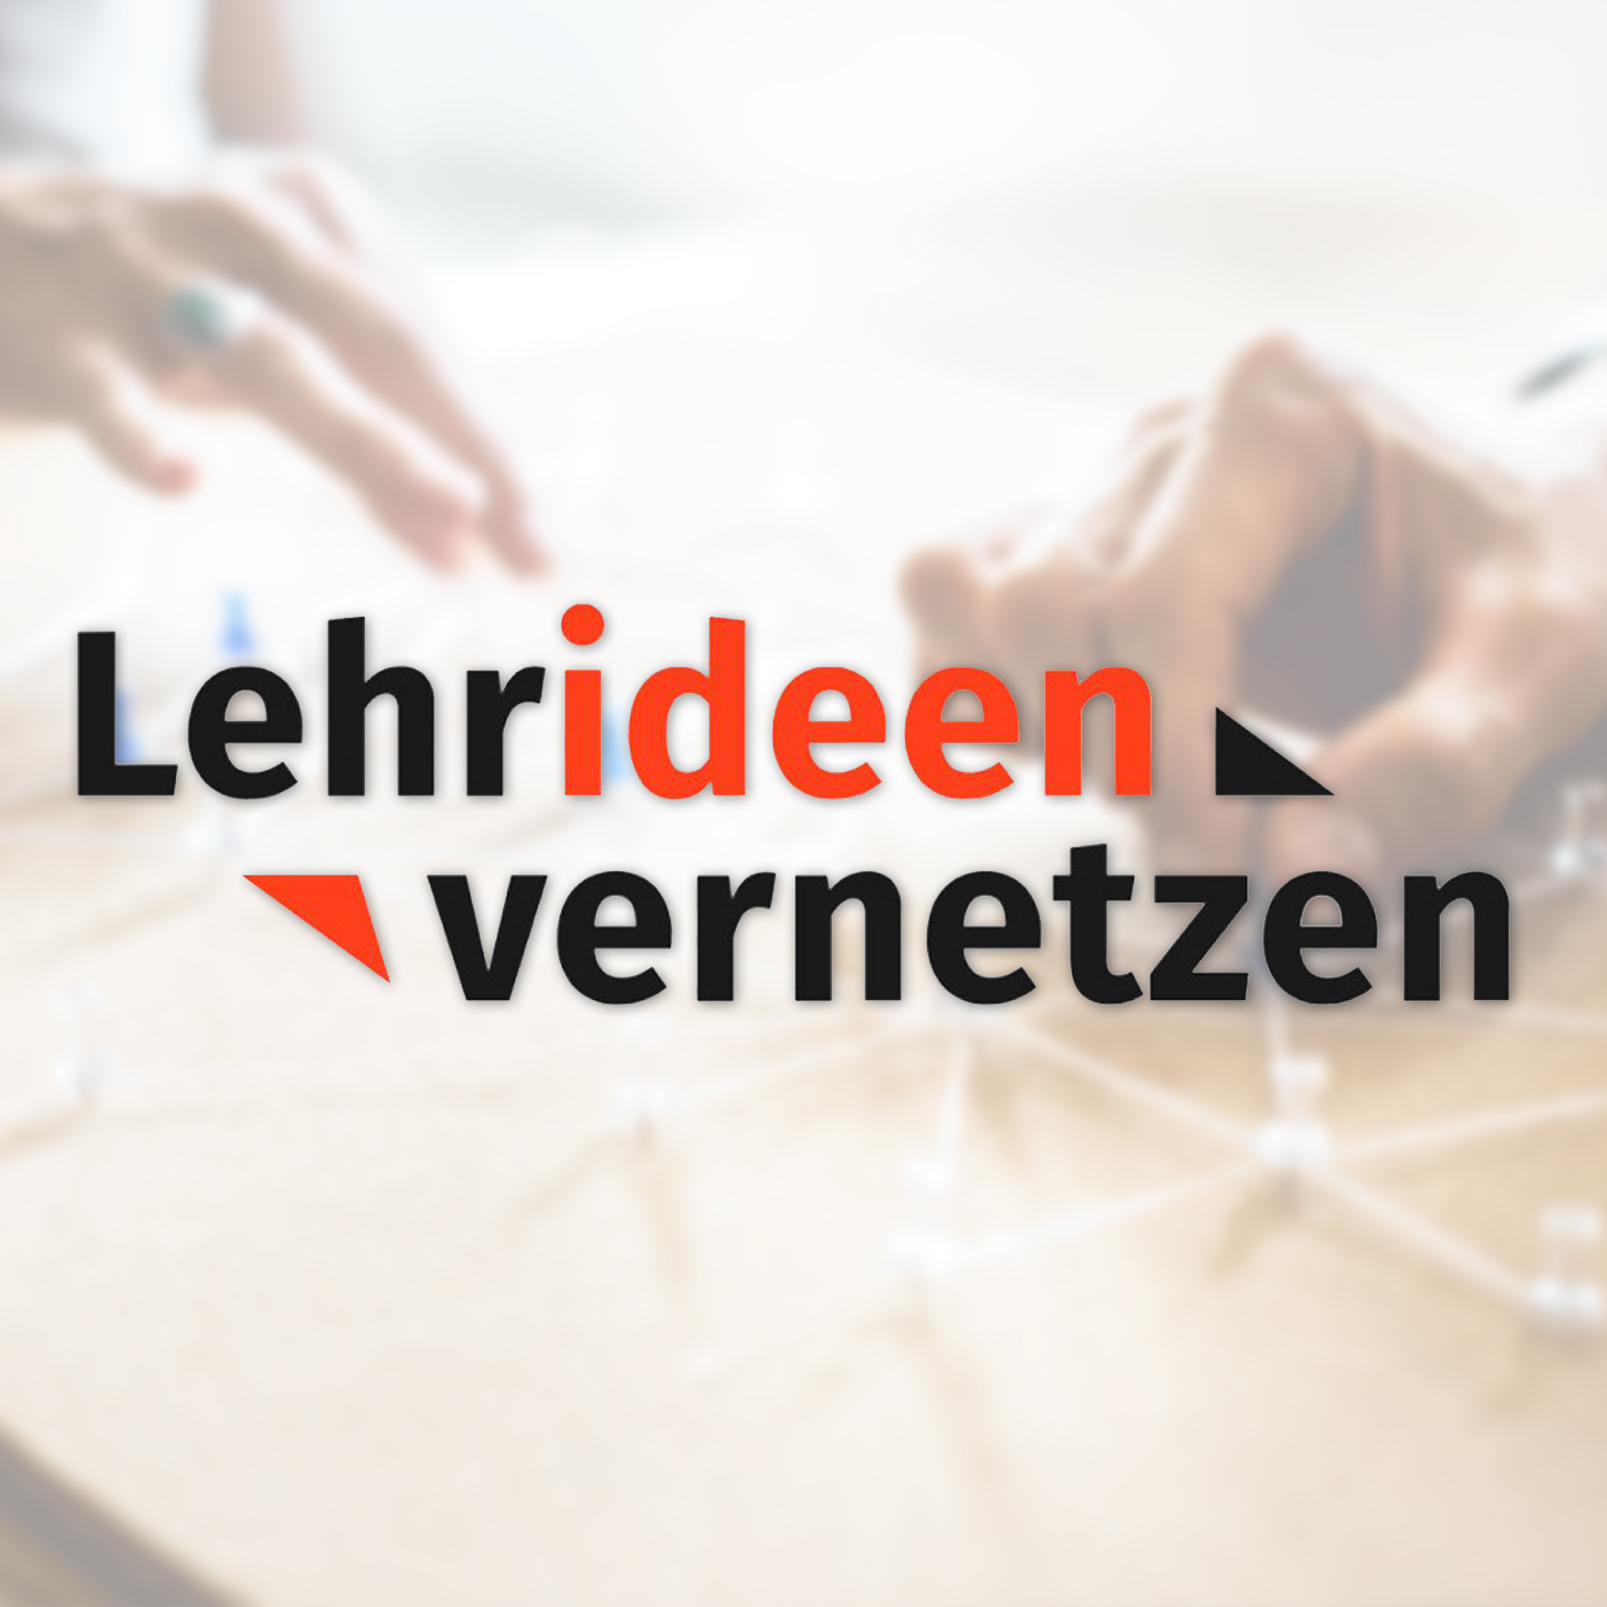 Live-Date: „Lehrideen vernetzen“- die Plattform für Lehrideen und Vernetzung in RLP